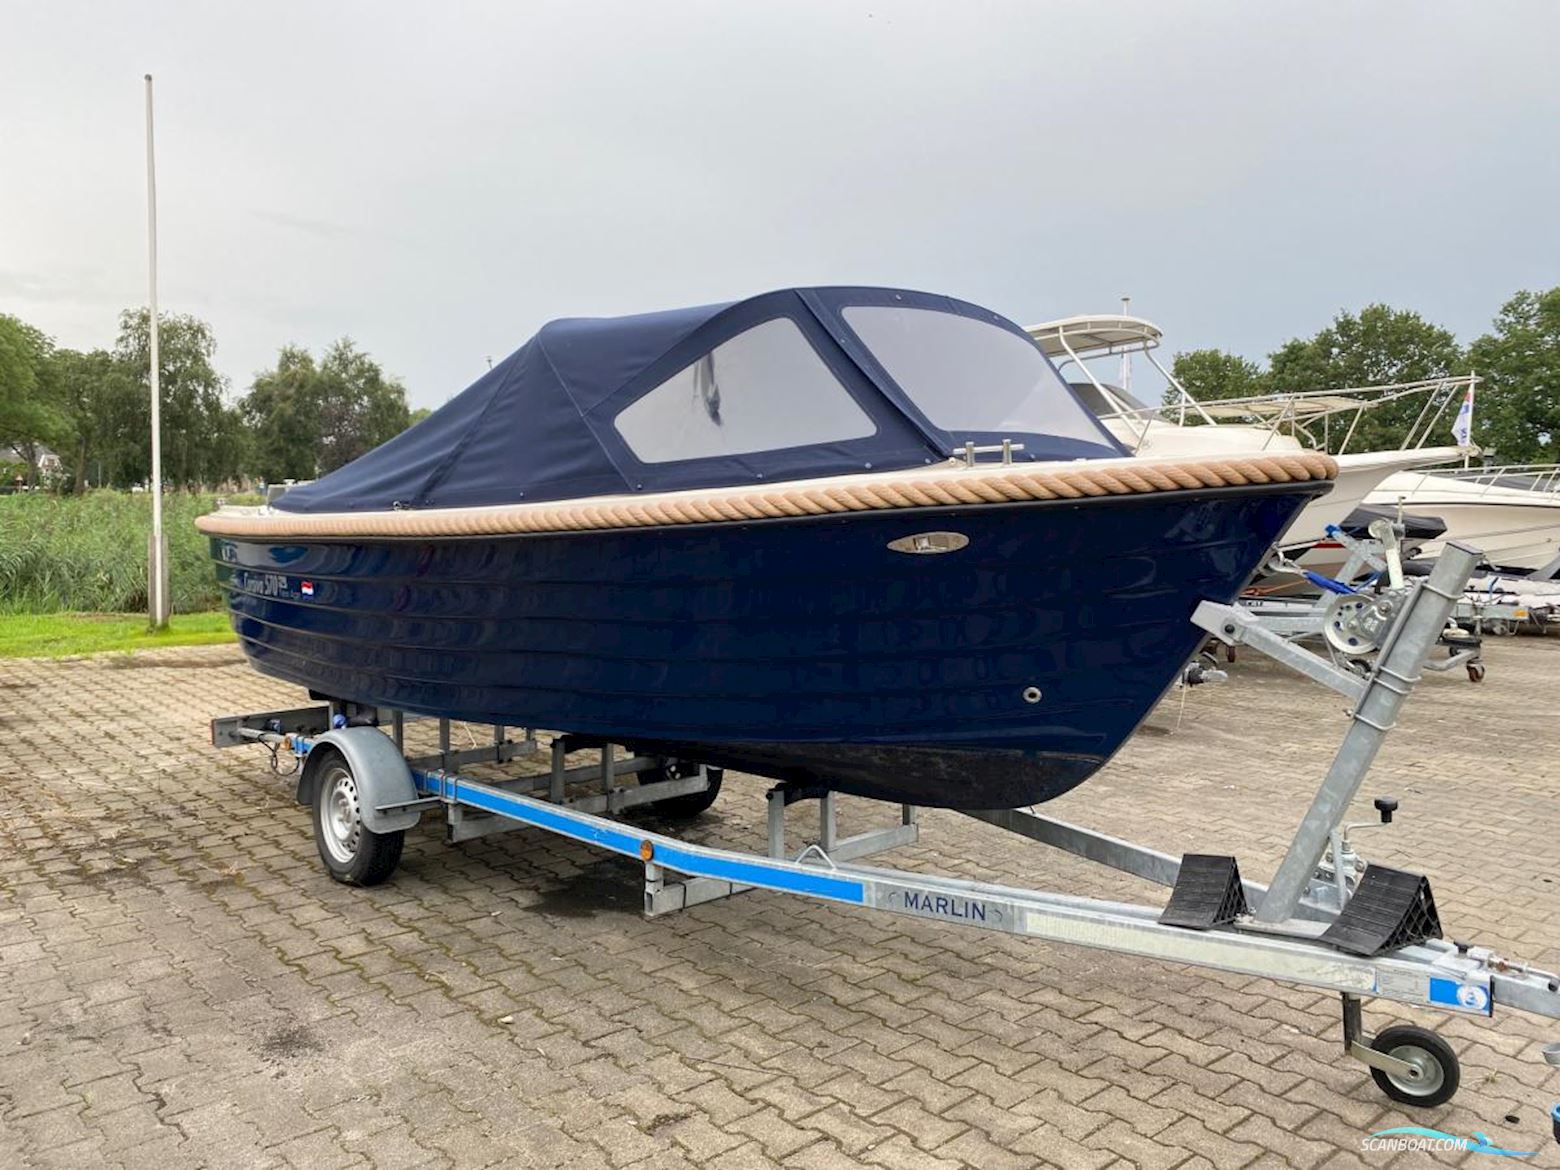 Corsiva 570 New Age Motor boat 2022, with Mercury engine, The Netherlands